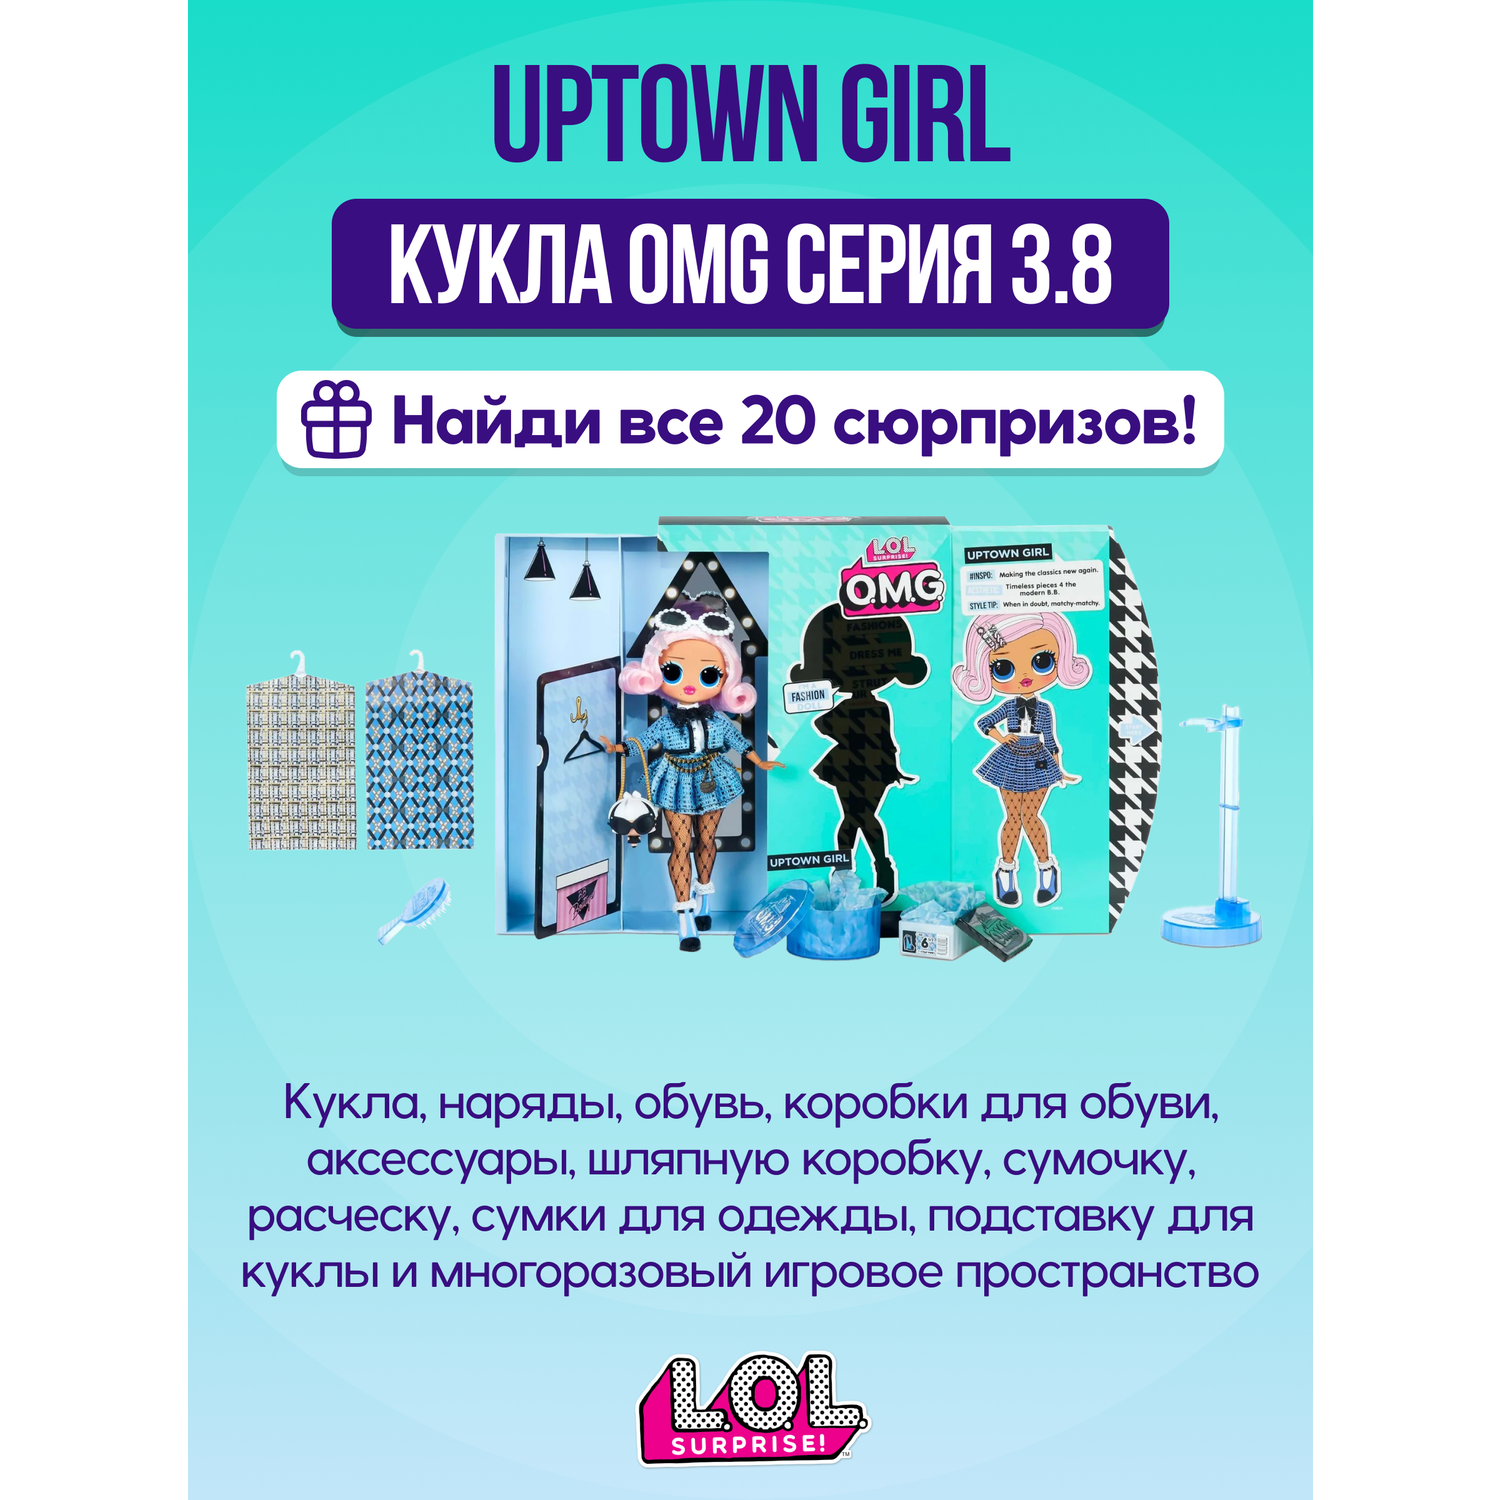 Игровой набор с куклой L.O.L. Surprise! OMG Uptown Girl 00-00016051 - фото 3